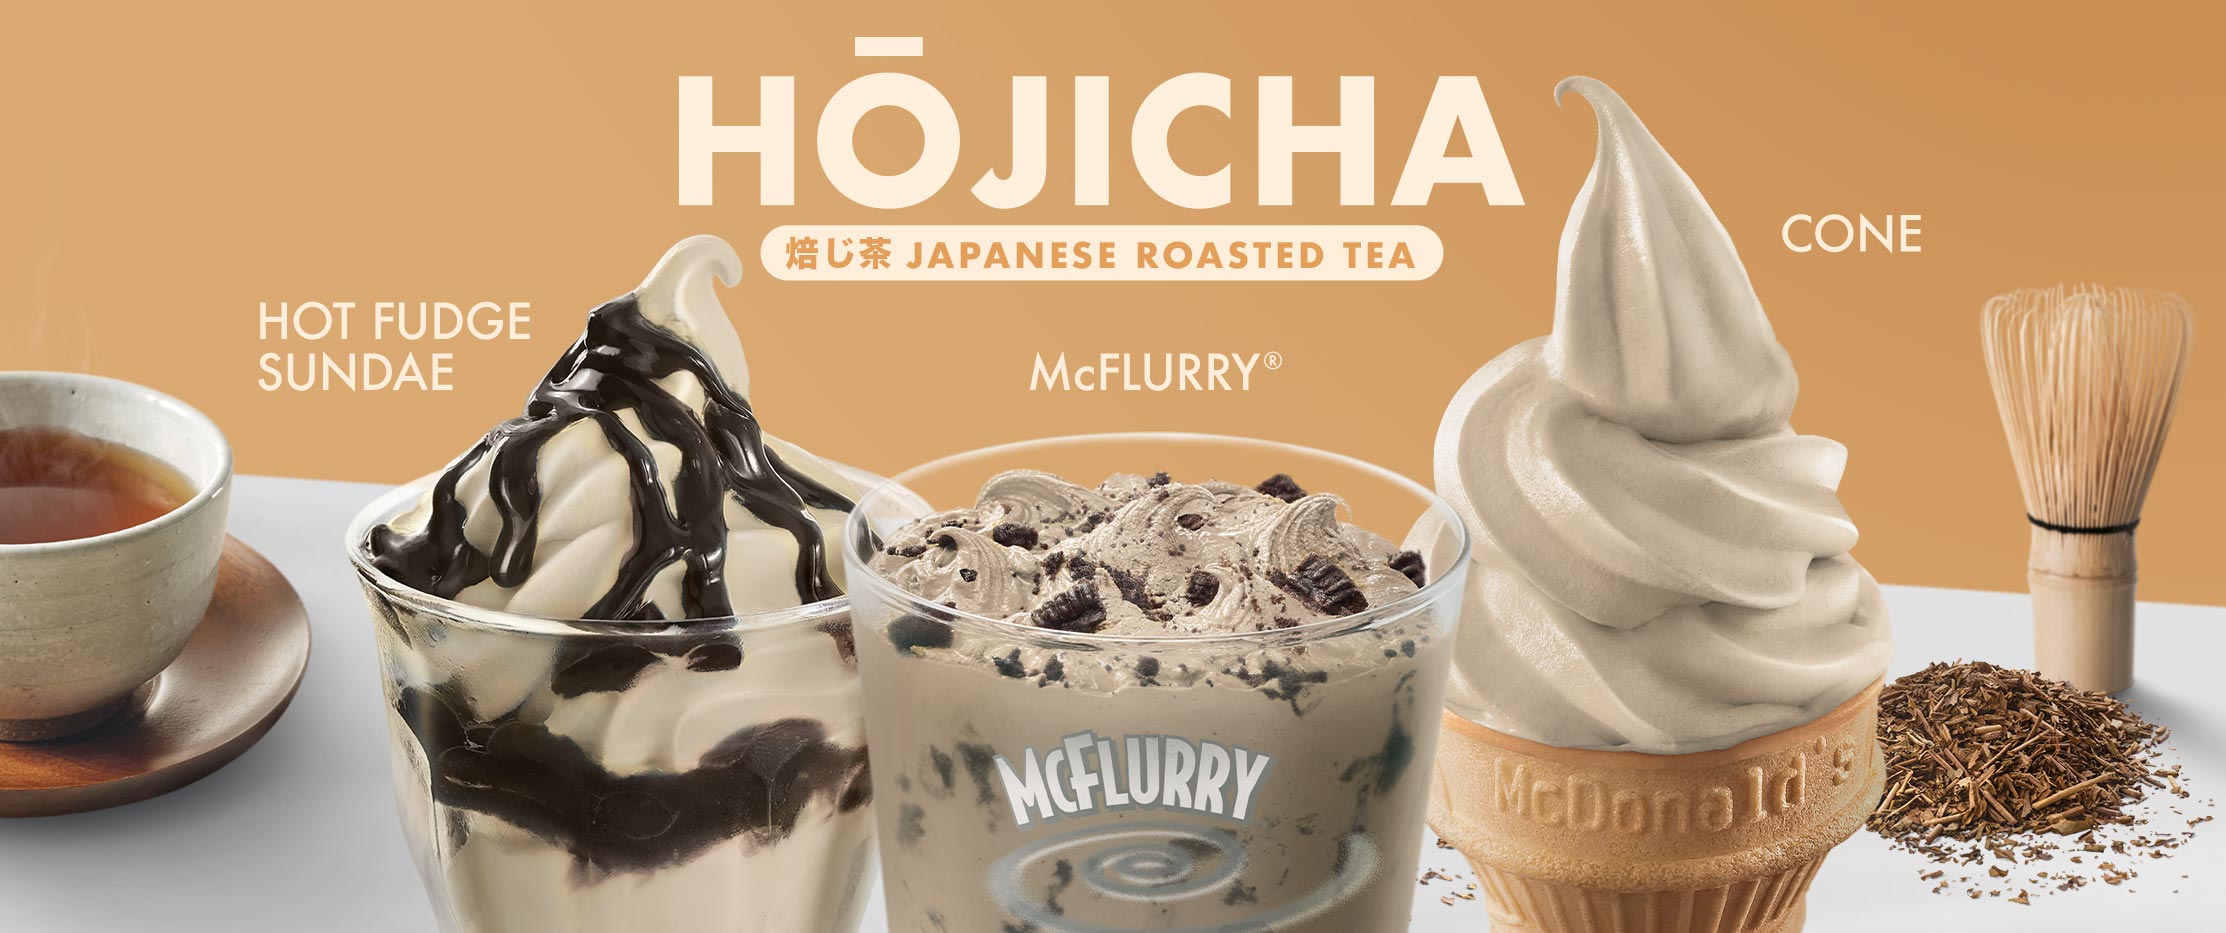 mcdonalds-hojicha-ice-cream